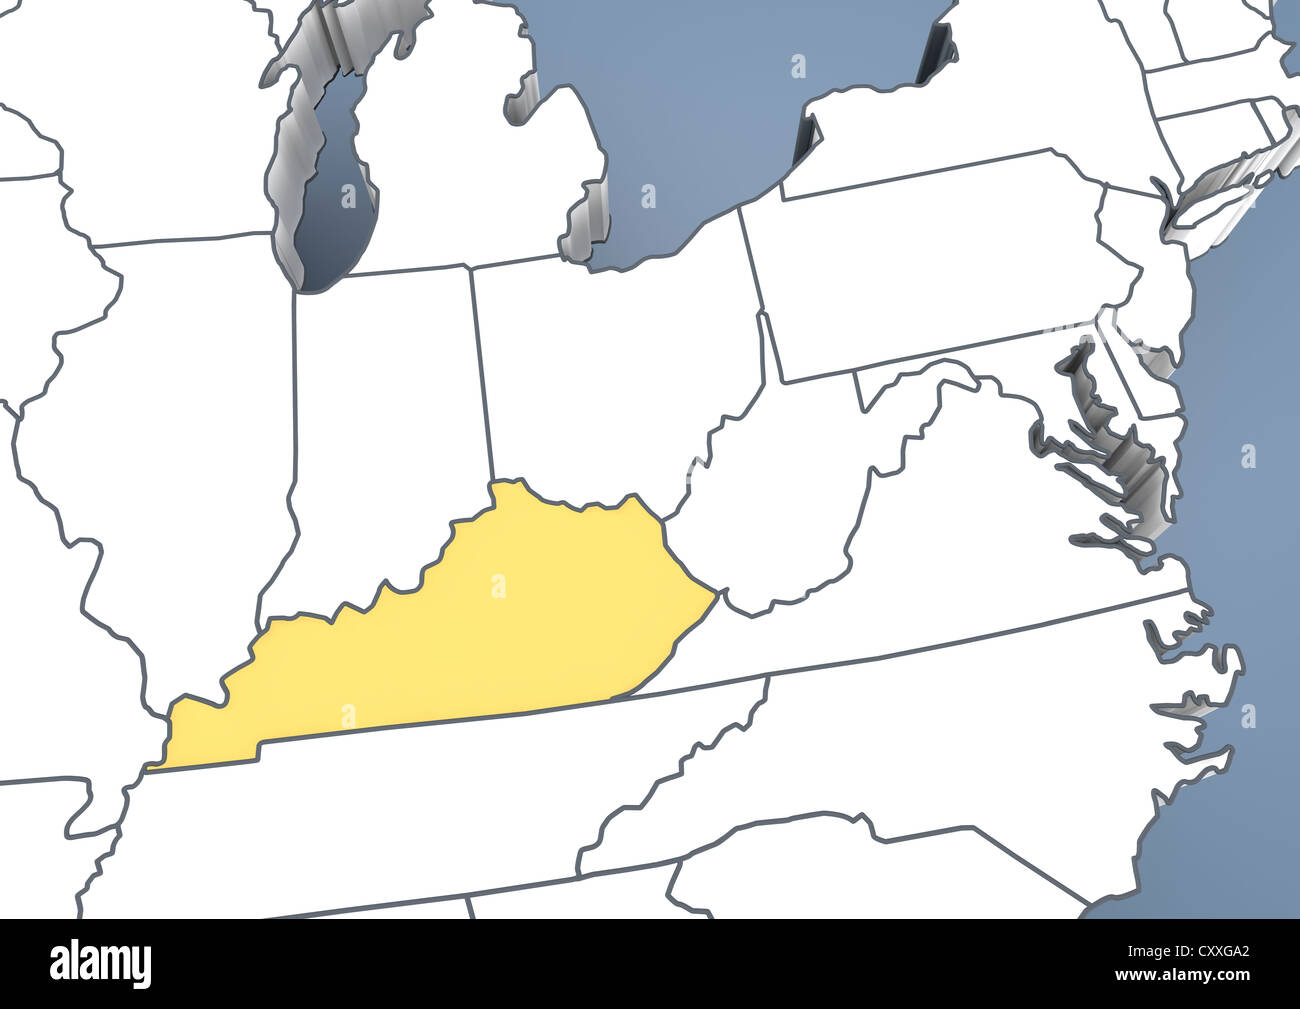 Kentucky Map Imagens – Procure 150 fotos, vetores e vídeos